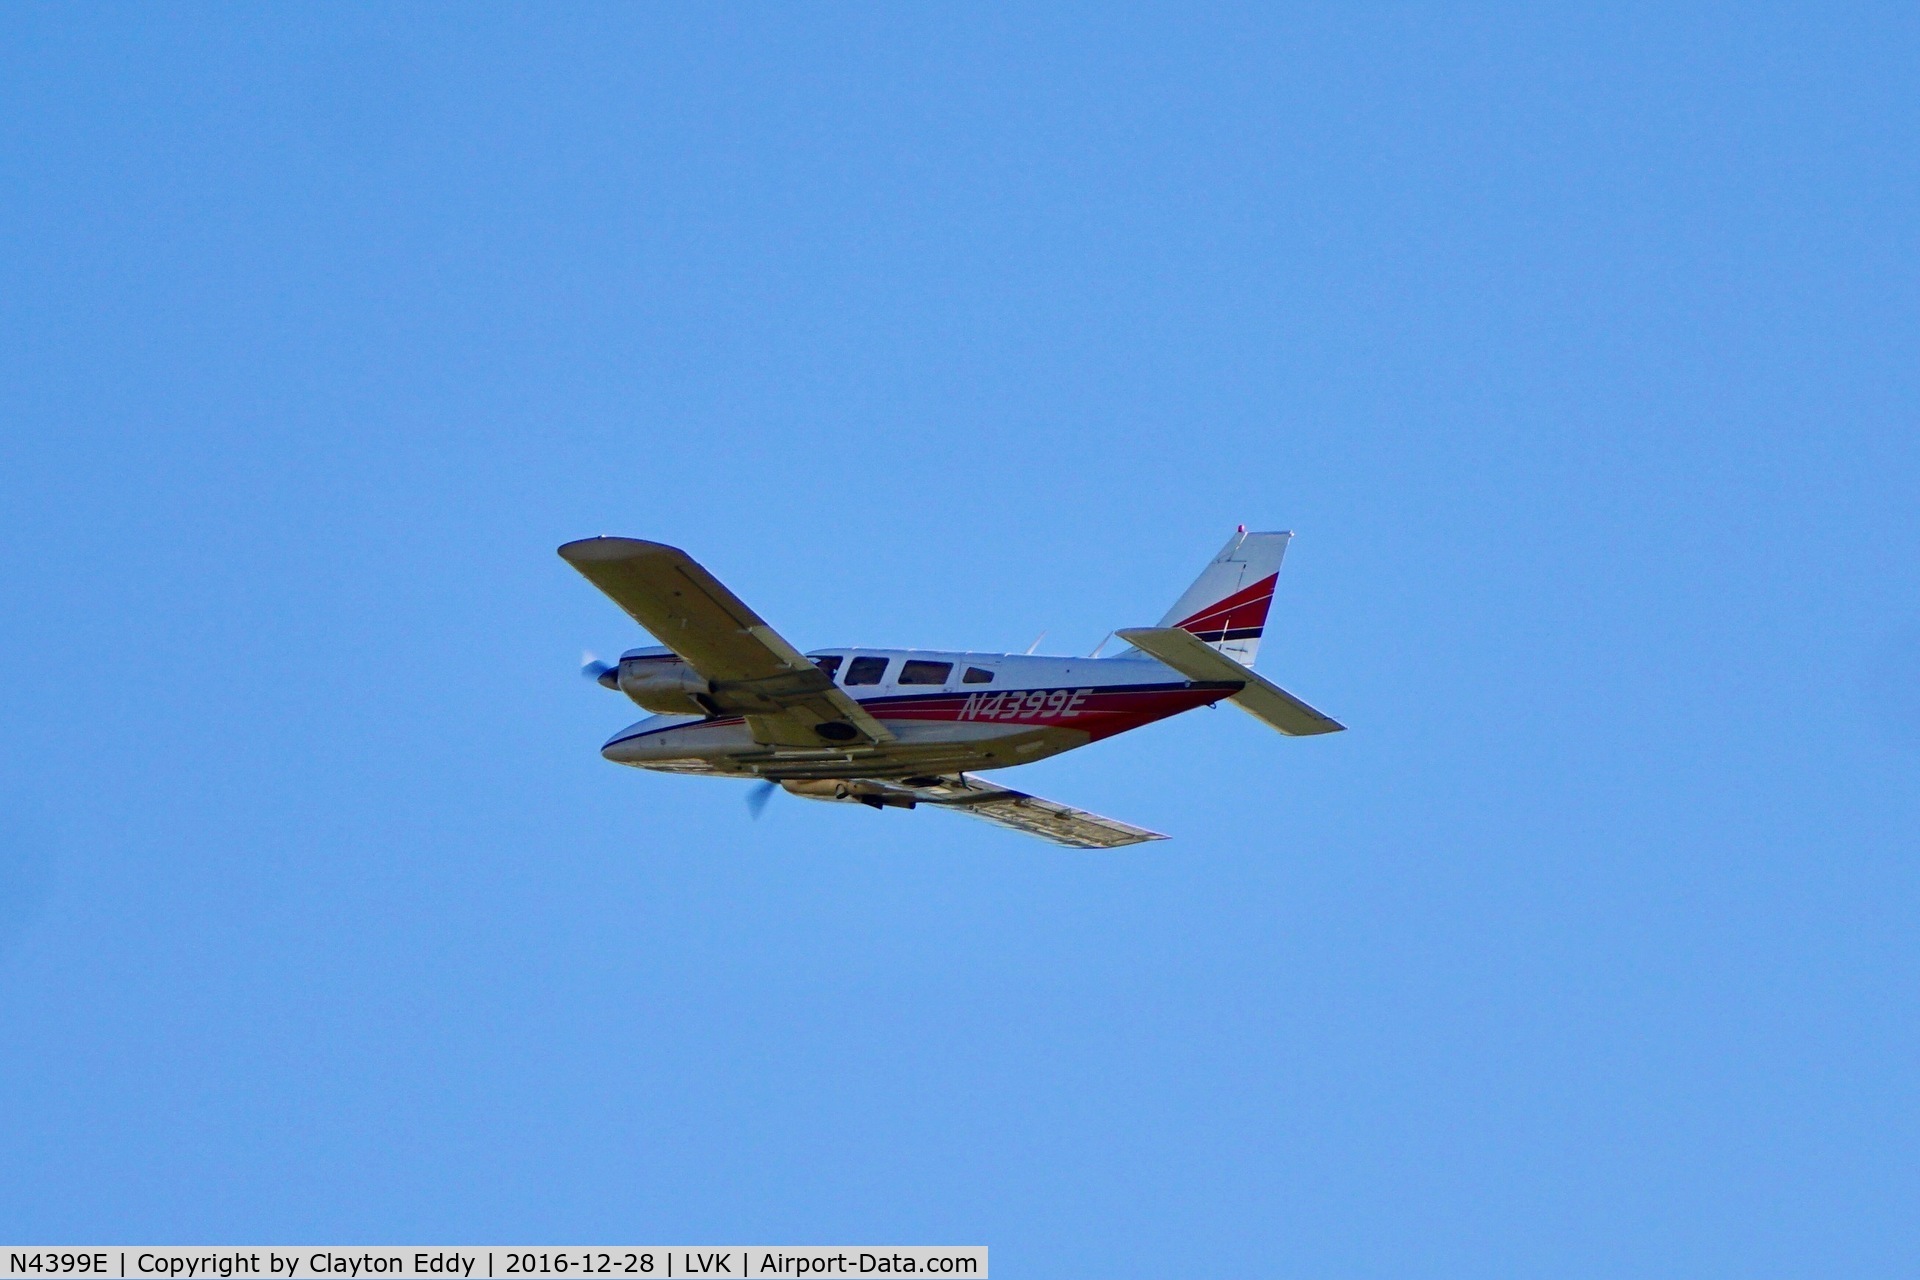 N4399E, 1974 Piper PA-34-200 C/N 34-7450179, Departing runway 7L LVK 2016.